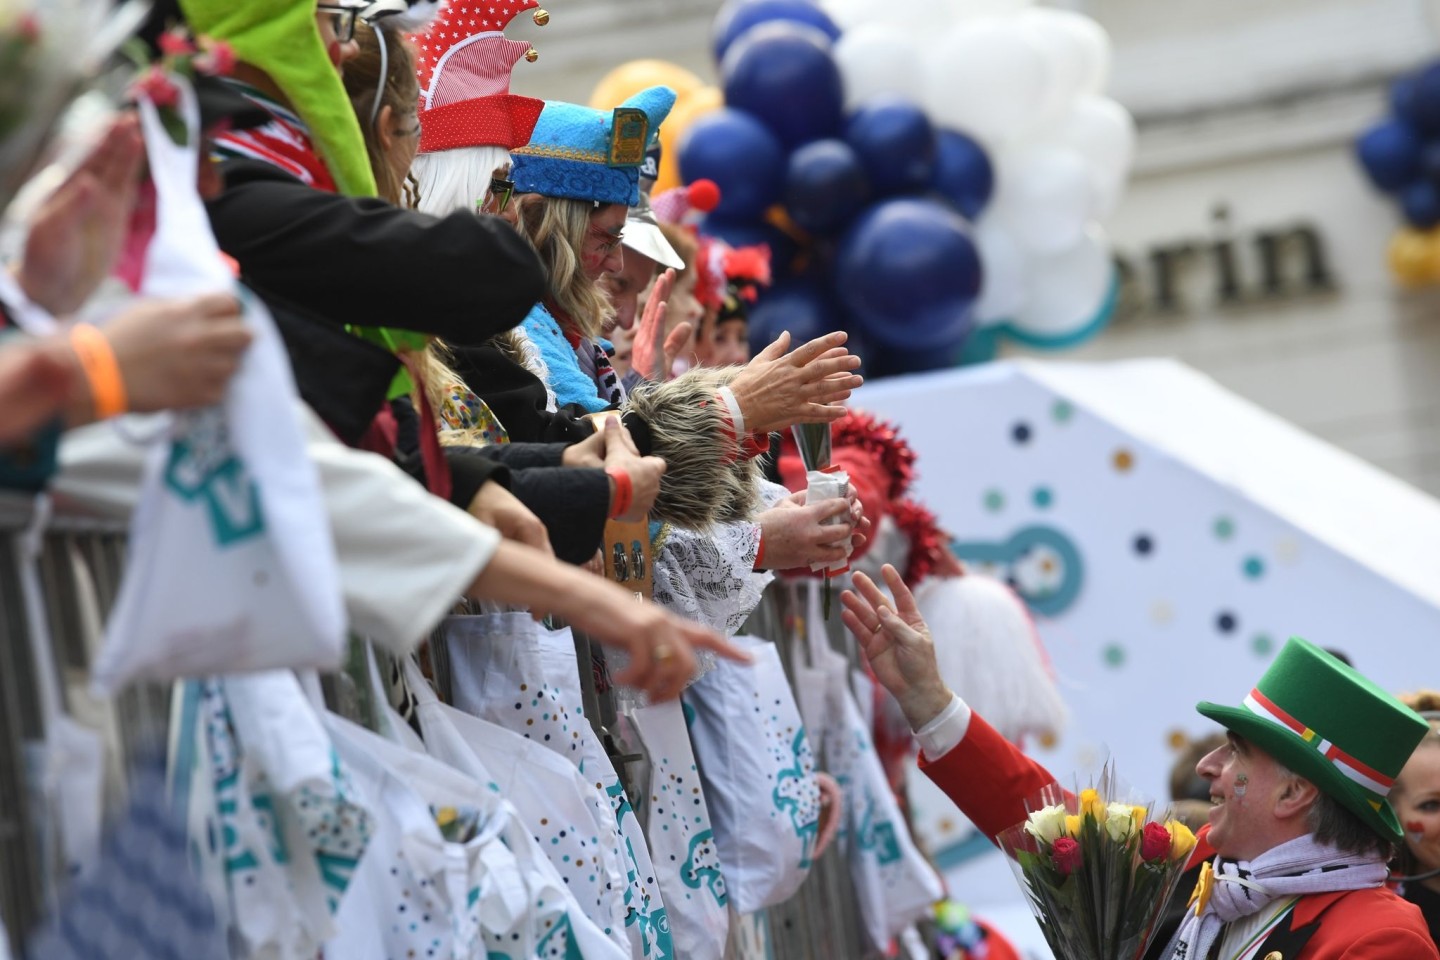 Karnevalisten auf dem Wagen verteilen beim Kölner Rosenmontagszug Kamelle und Blumensträuße (Strüßjer) - doch wie umweltfreundlich sind eigentlich die Verpackungen?